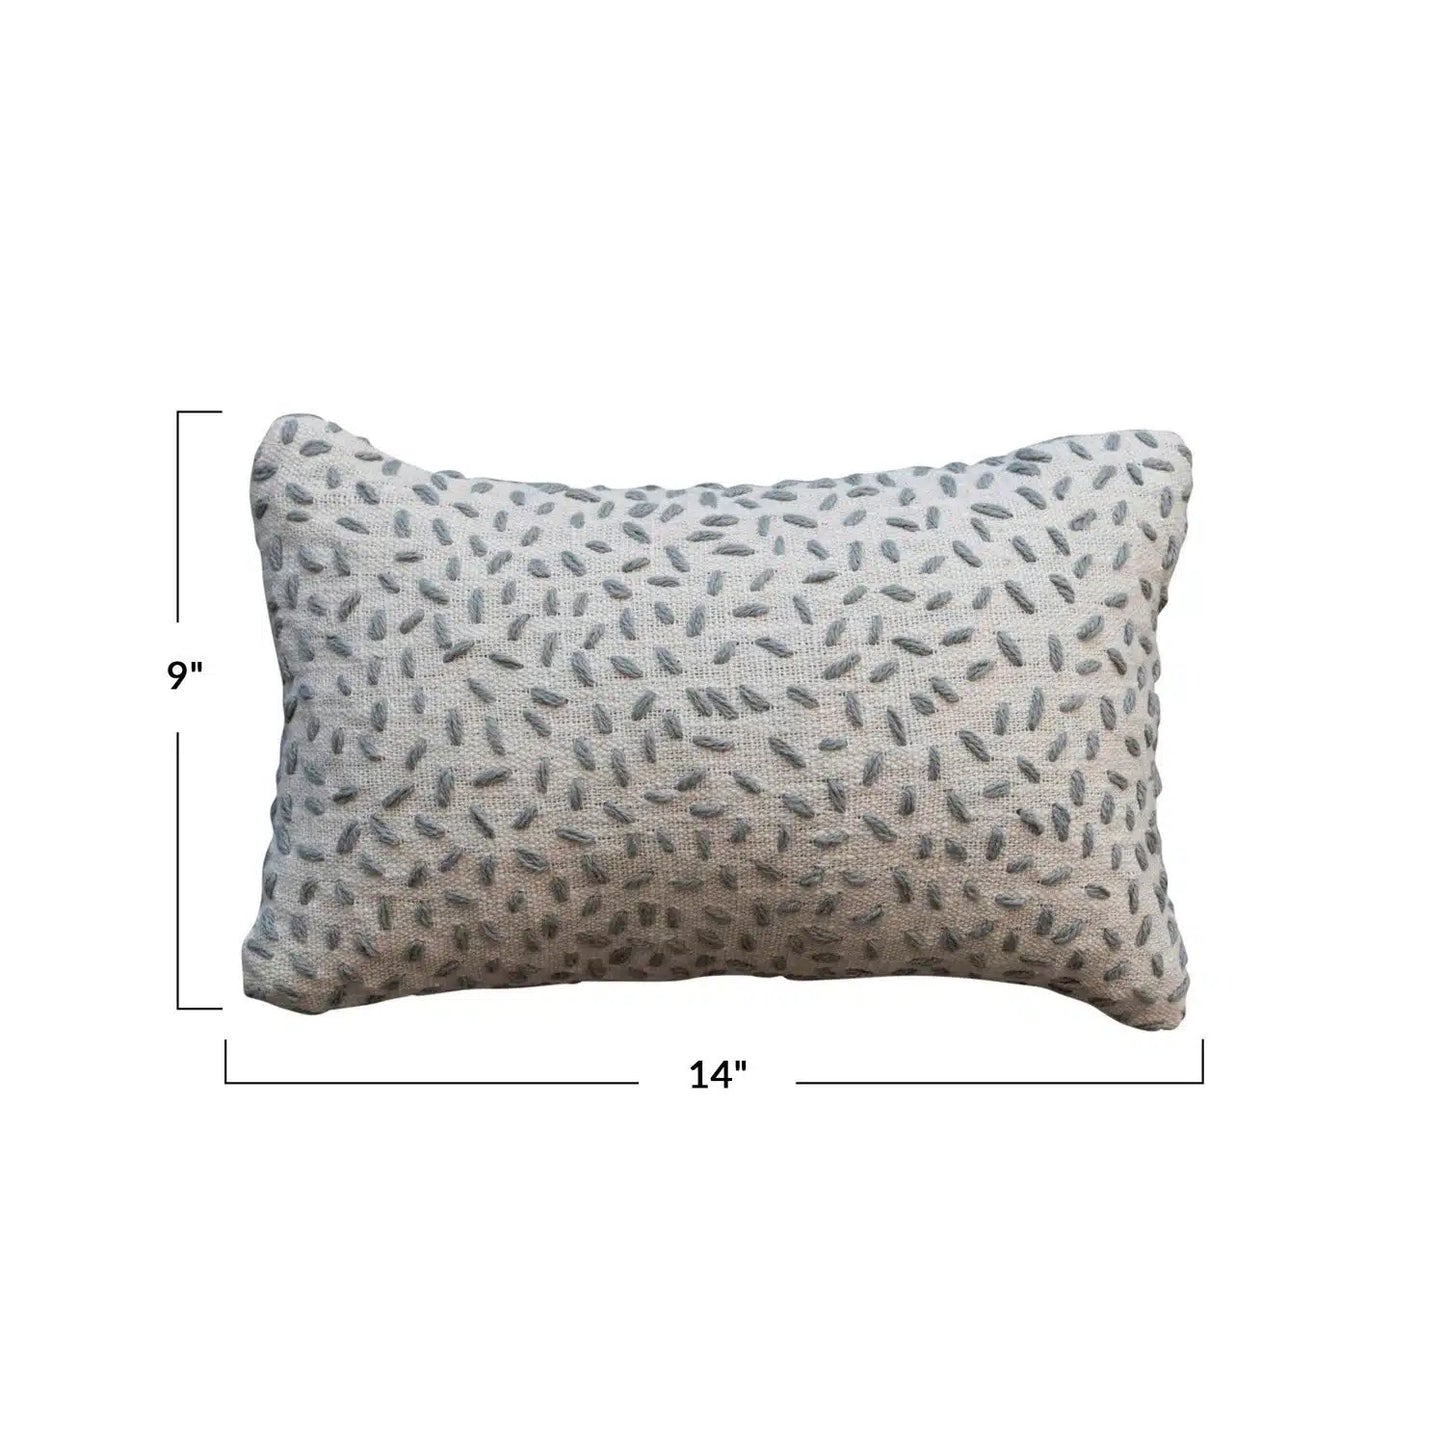 Hand-Embroidered Cotton Kantha Stitch Lumbar Pillow